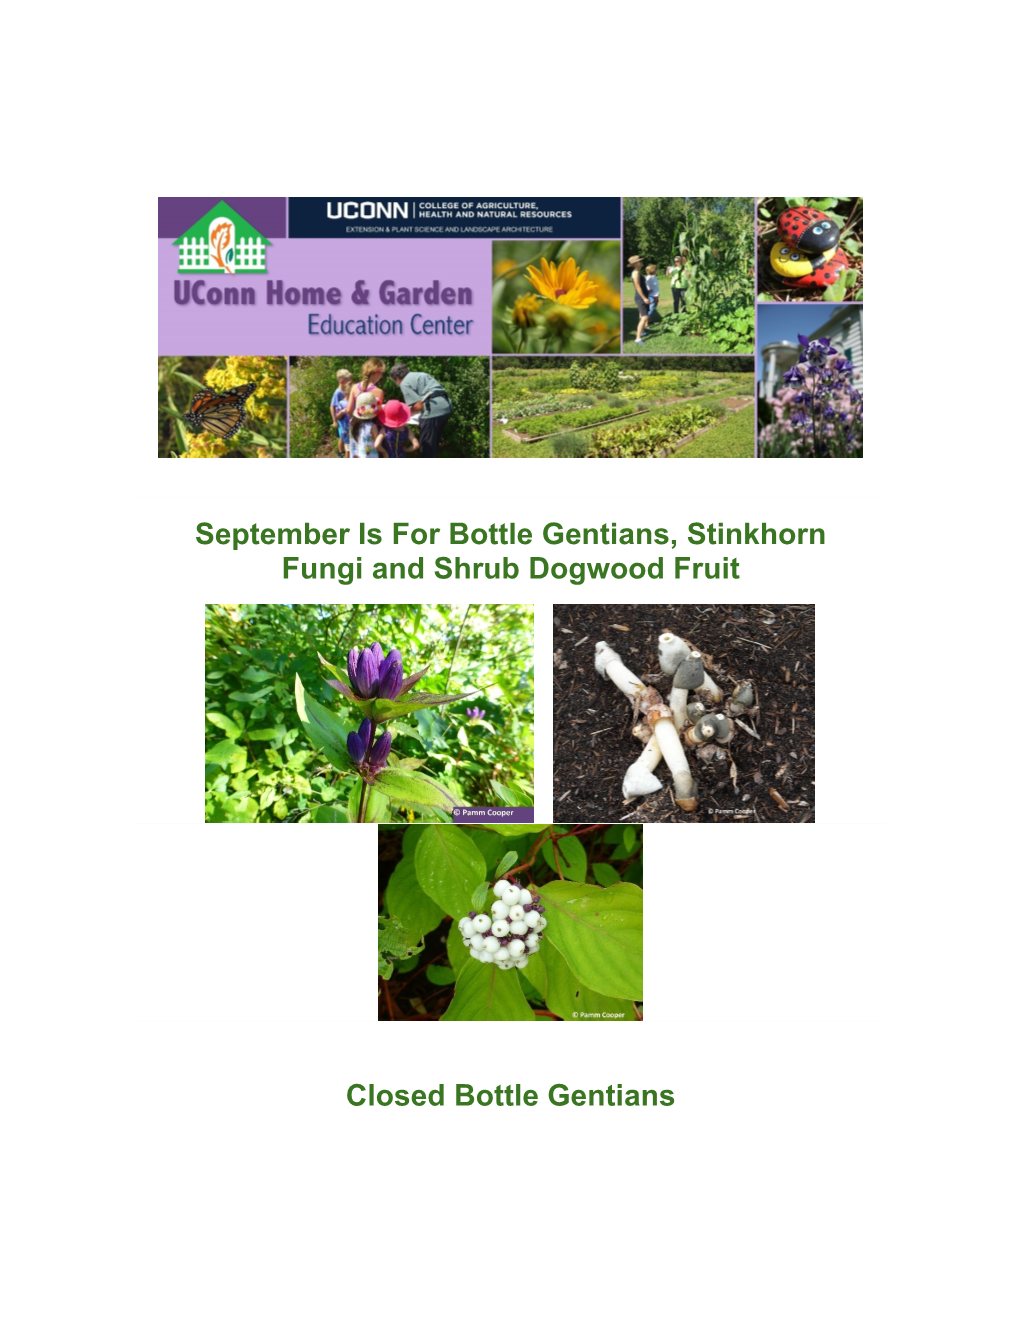 September Is for Bottle Gentians, Stinkhorn Fungi and Shrub Dogwood Fruit